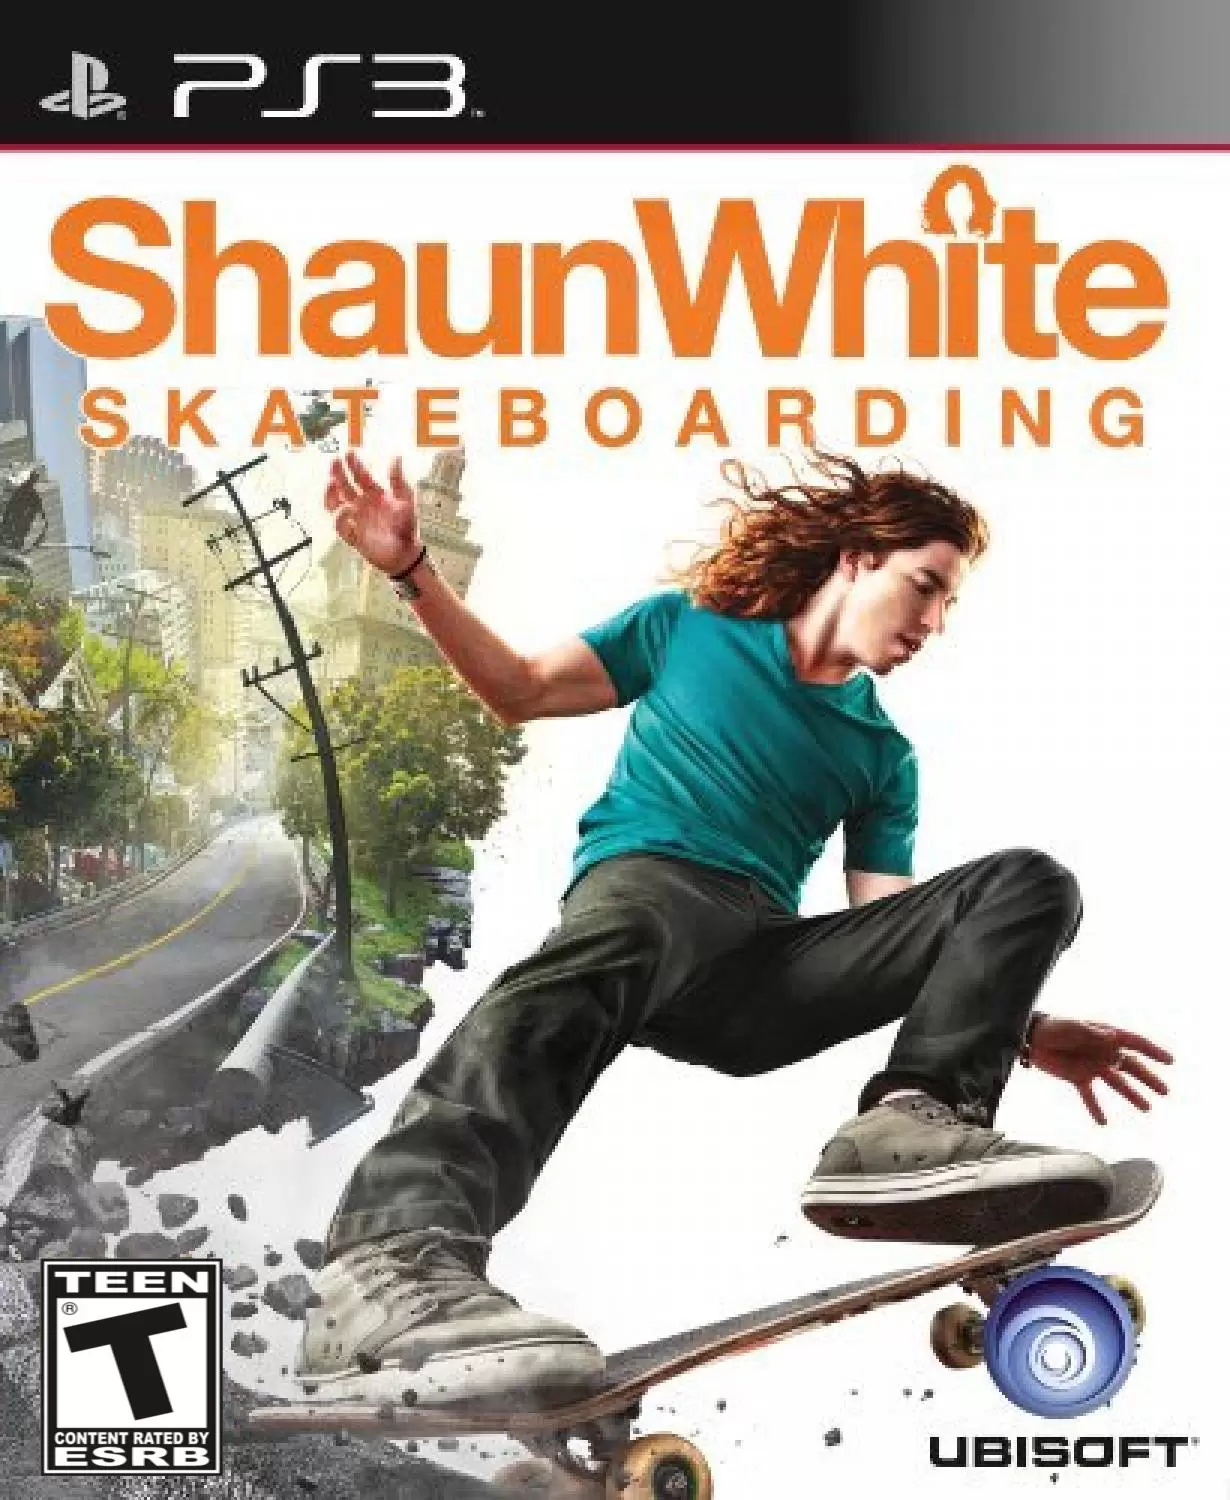 PS3 Games - Shaun White Skateboarding